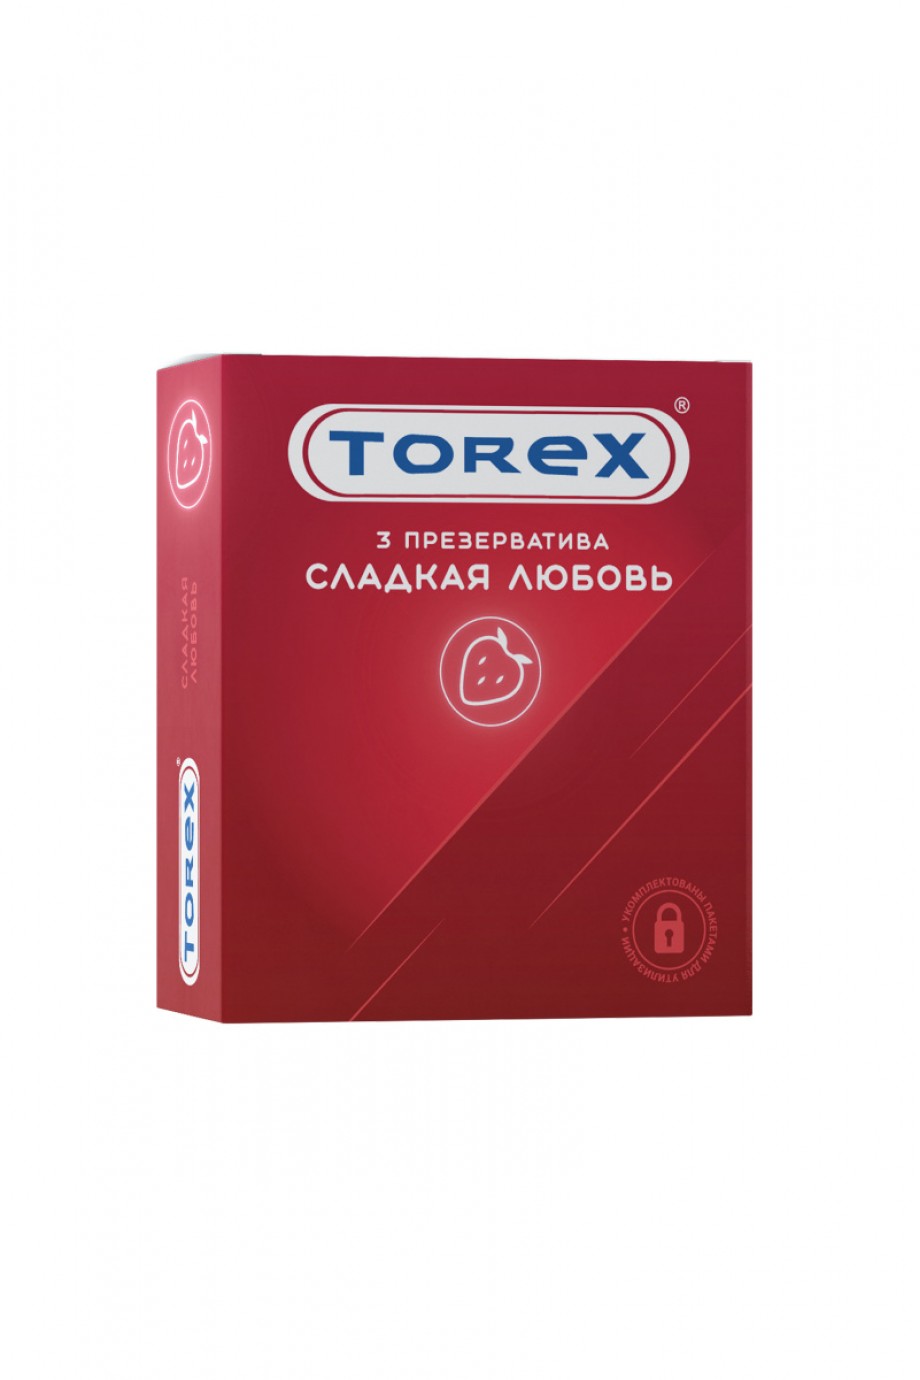 Презервативы TOREX сладкая любовь, латекс, 3 шт